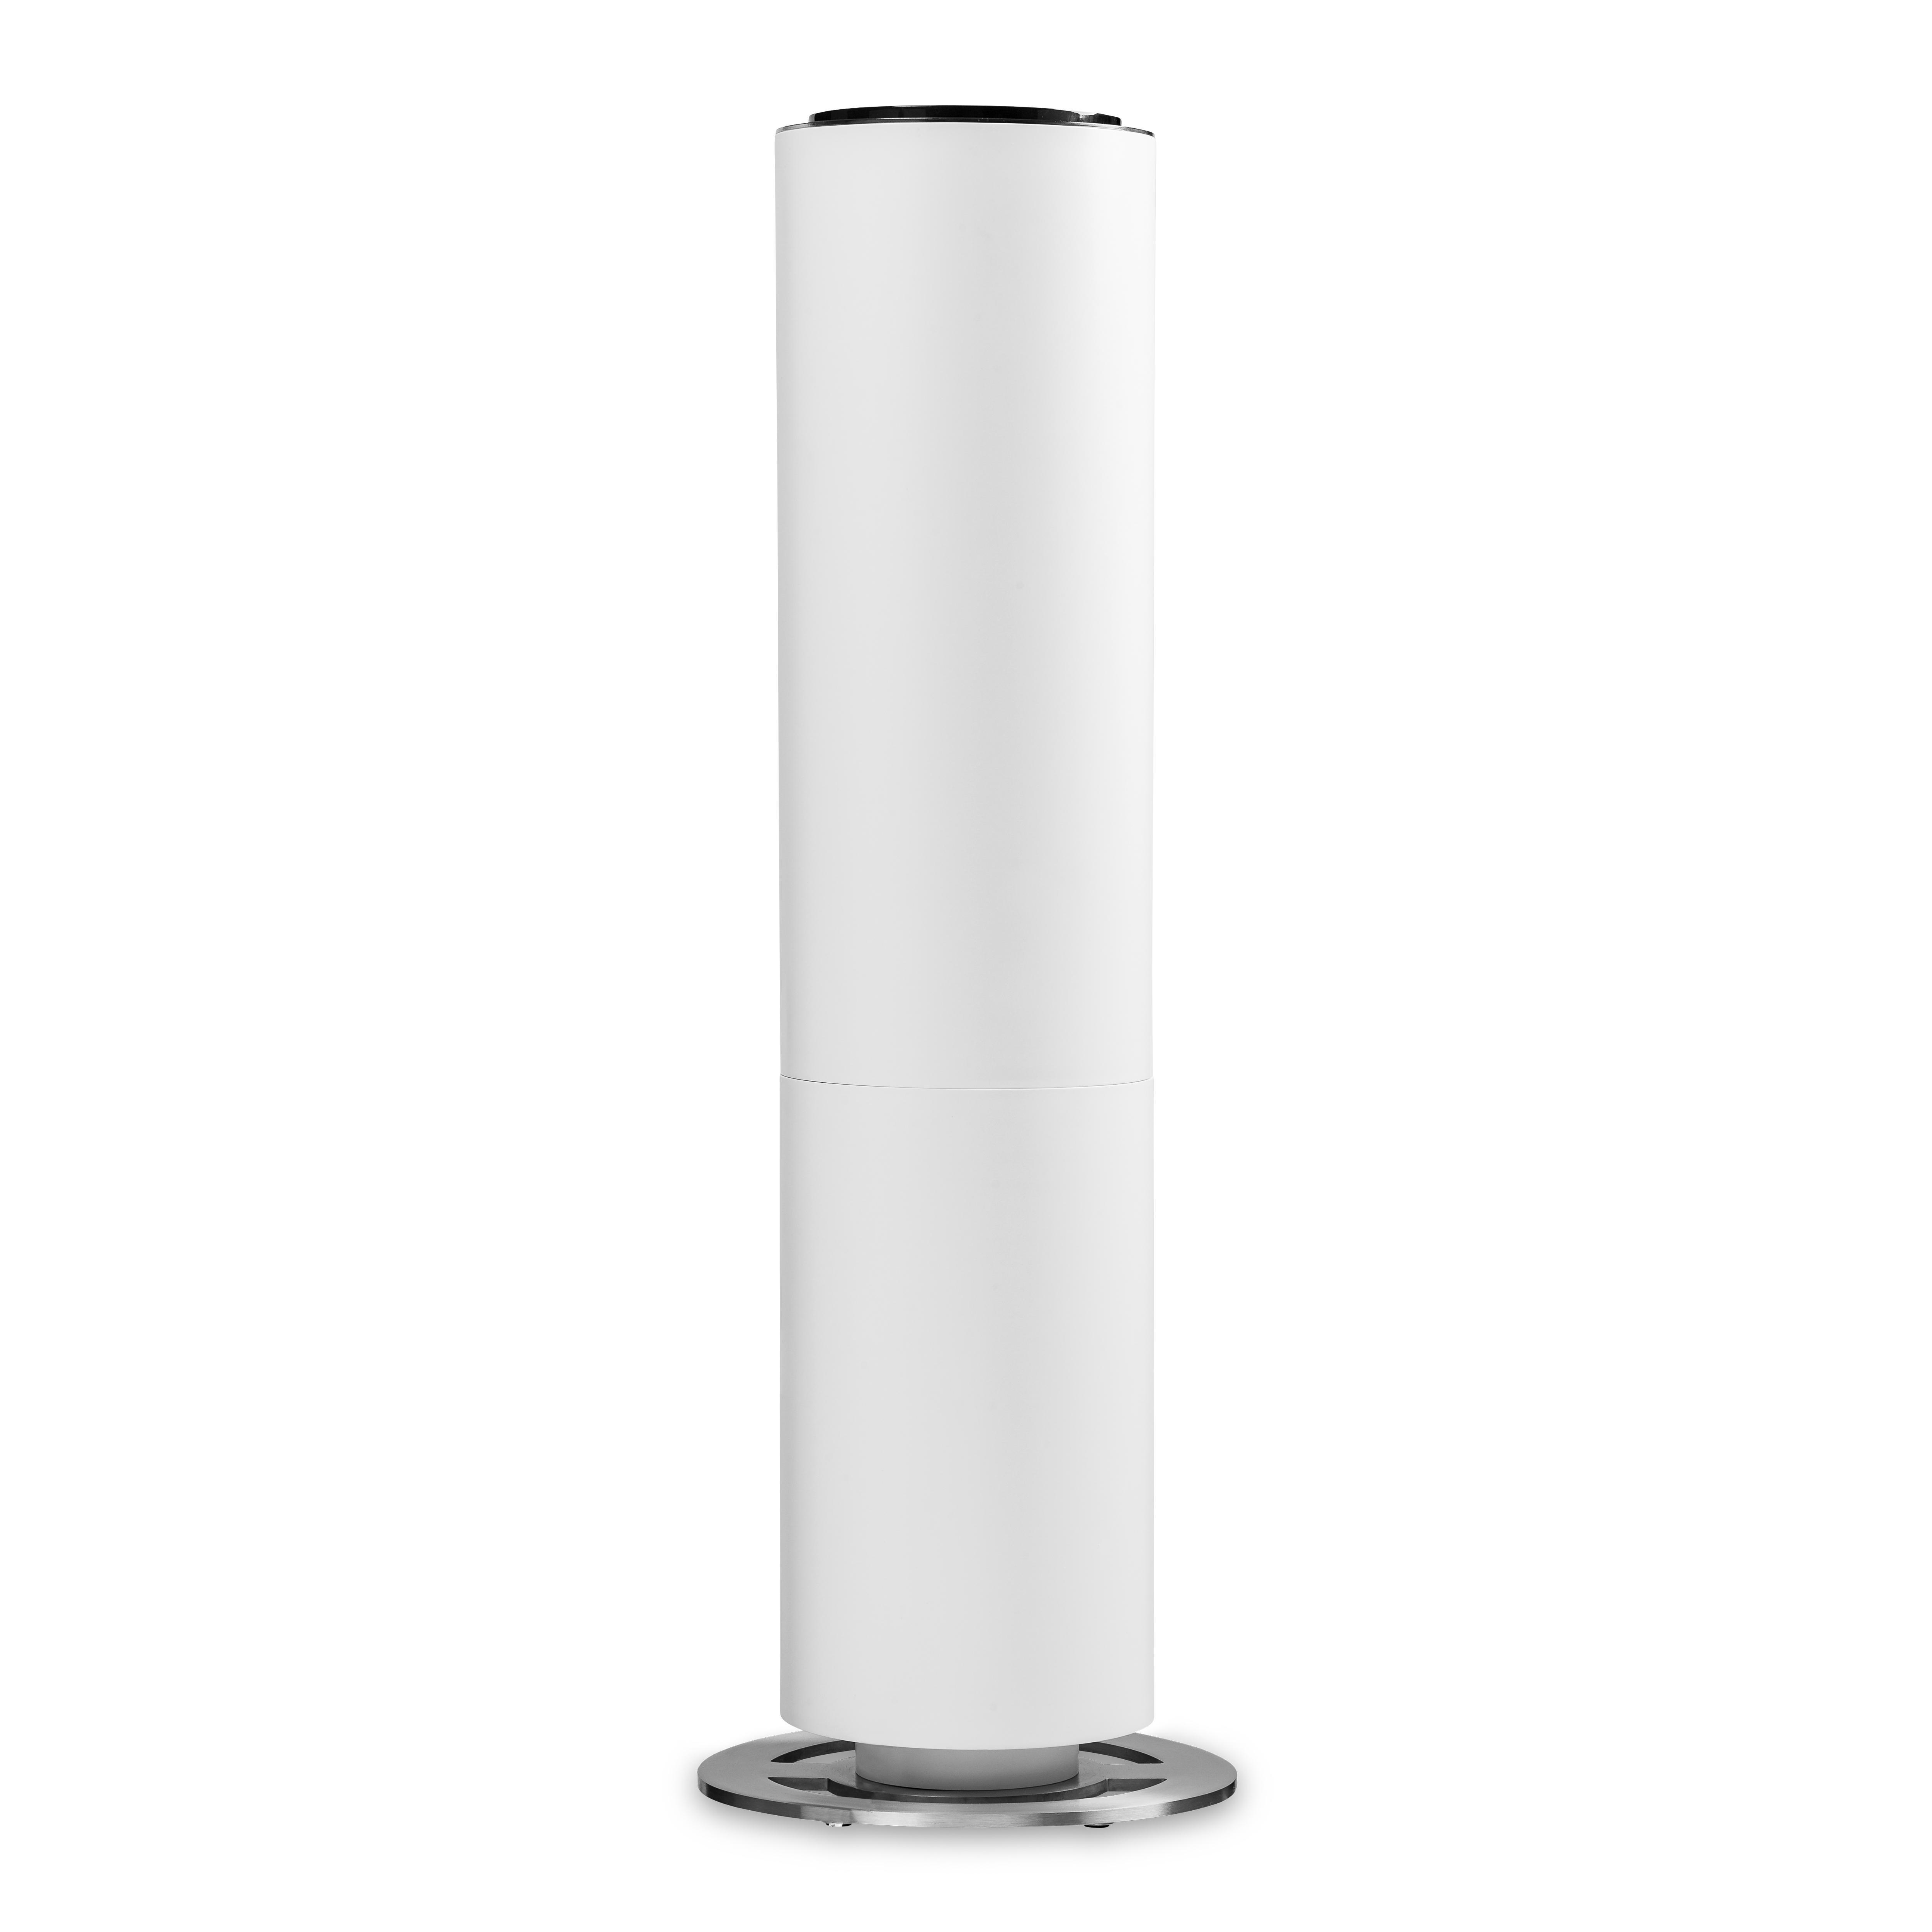 Smart Luftbefeuchter DUUX 40 Beam m²) Raumgröße: DXHU05 Watt, Weiß (27